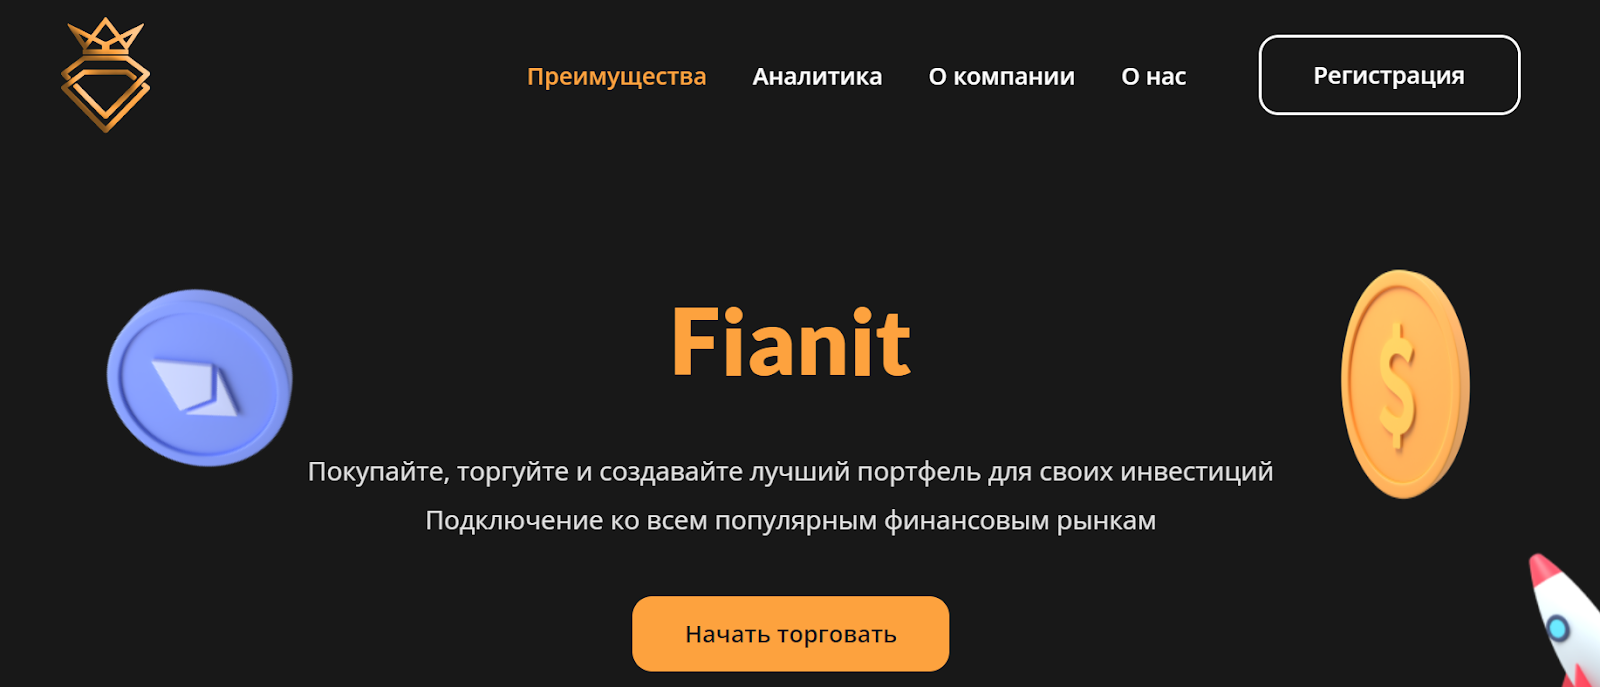 Fianit официальный сайт